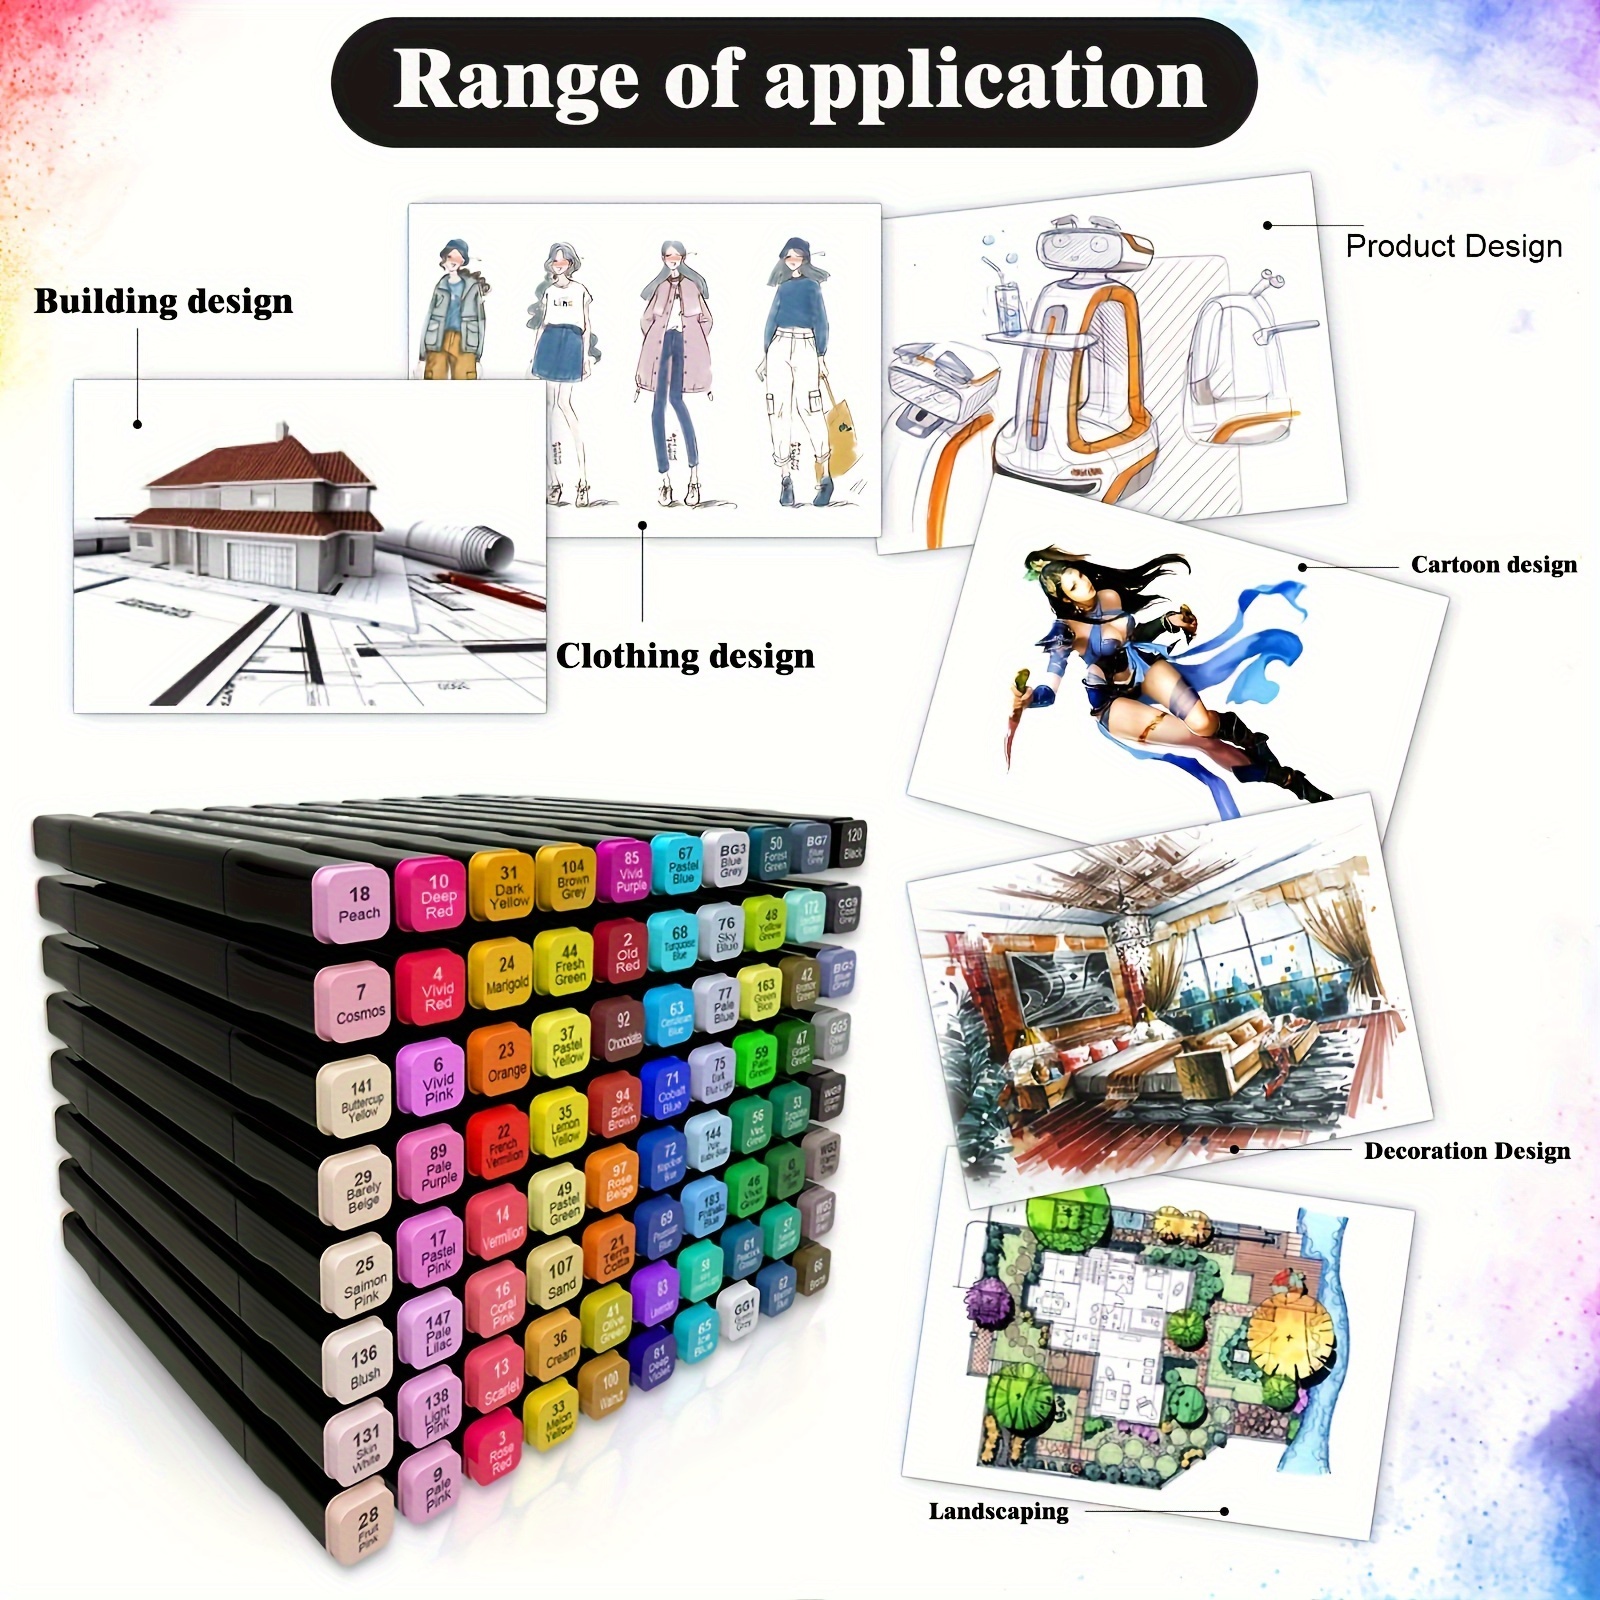 Lelix Marcadores artísticos de 30 colores, rotuladores permanentes de doble  punta, perfectos para niños y adultos, artistas, dibujar, hacer tarjetas y